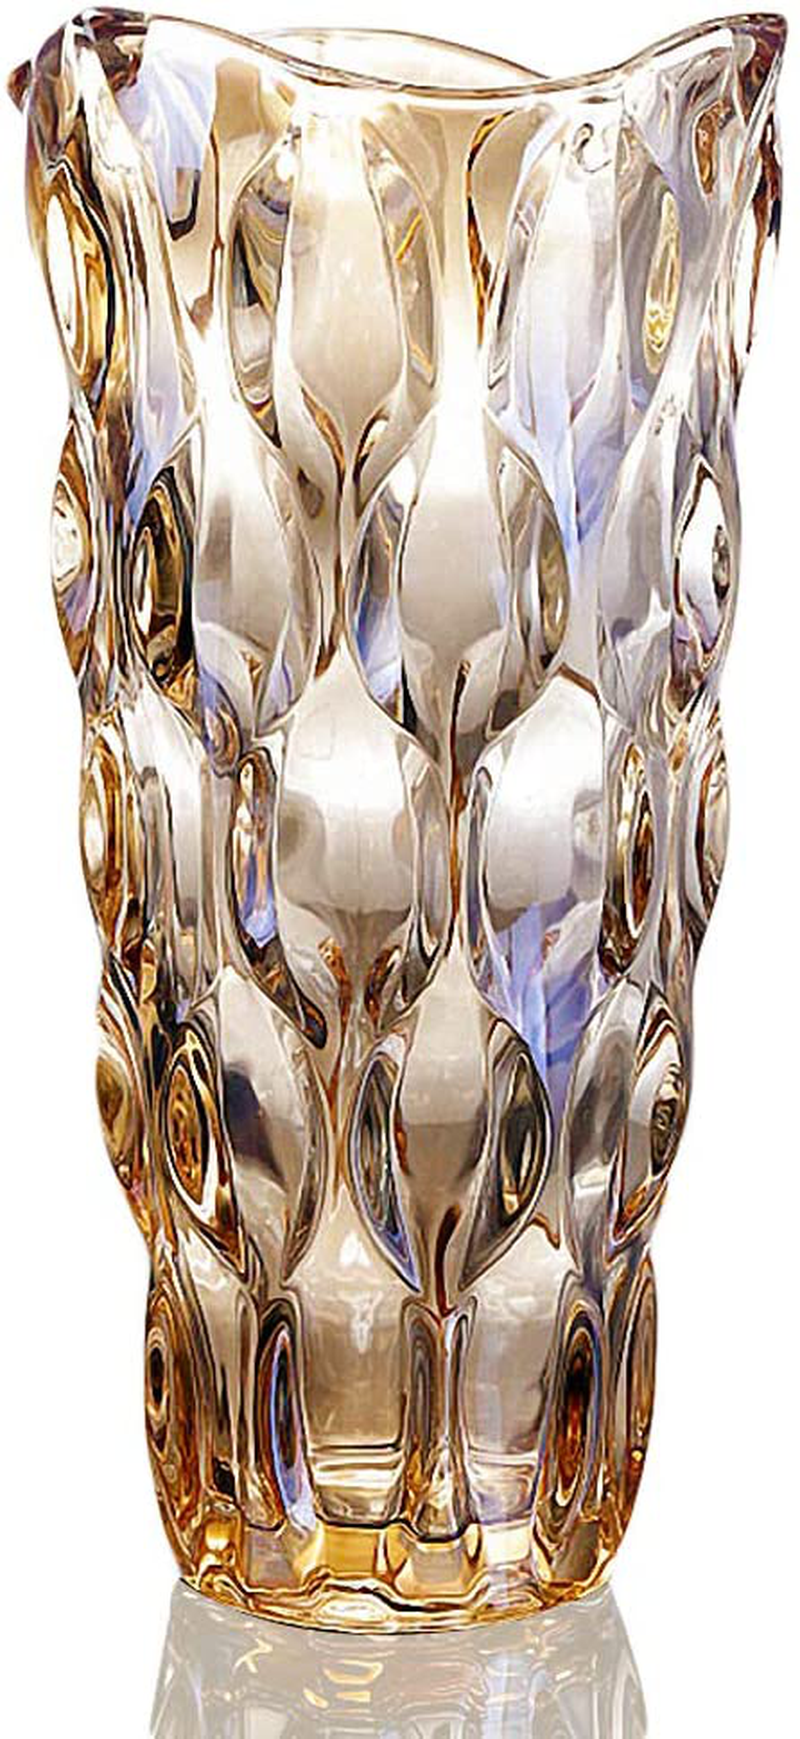 Flower Vase for Decor Glass Gold Vase 11.8" Tall Home & Garden > Decor > Vases MagicPro   